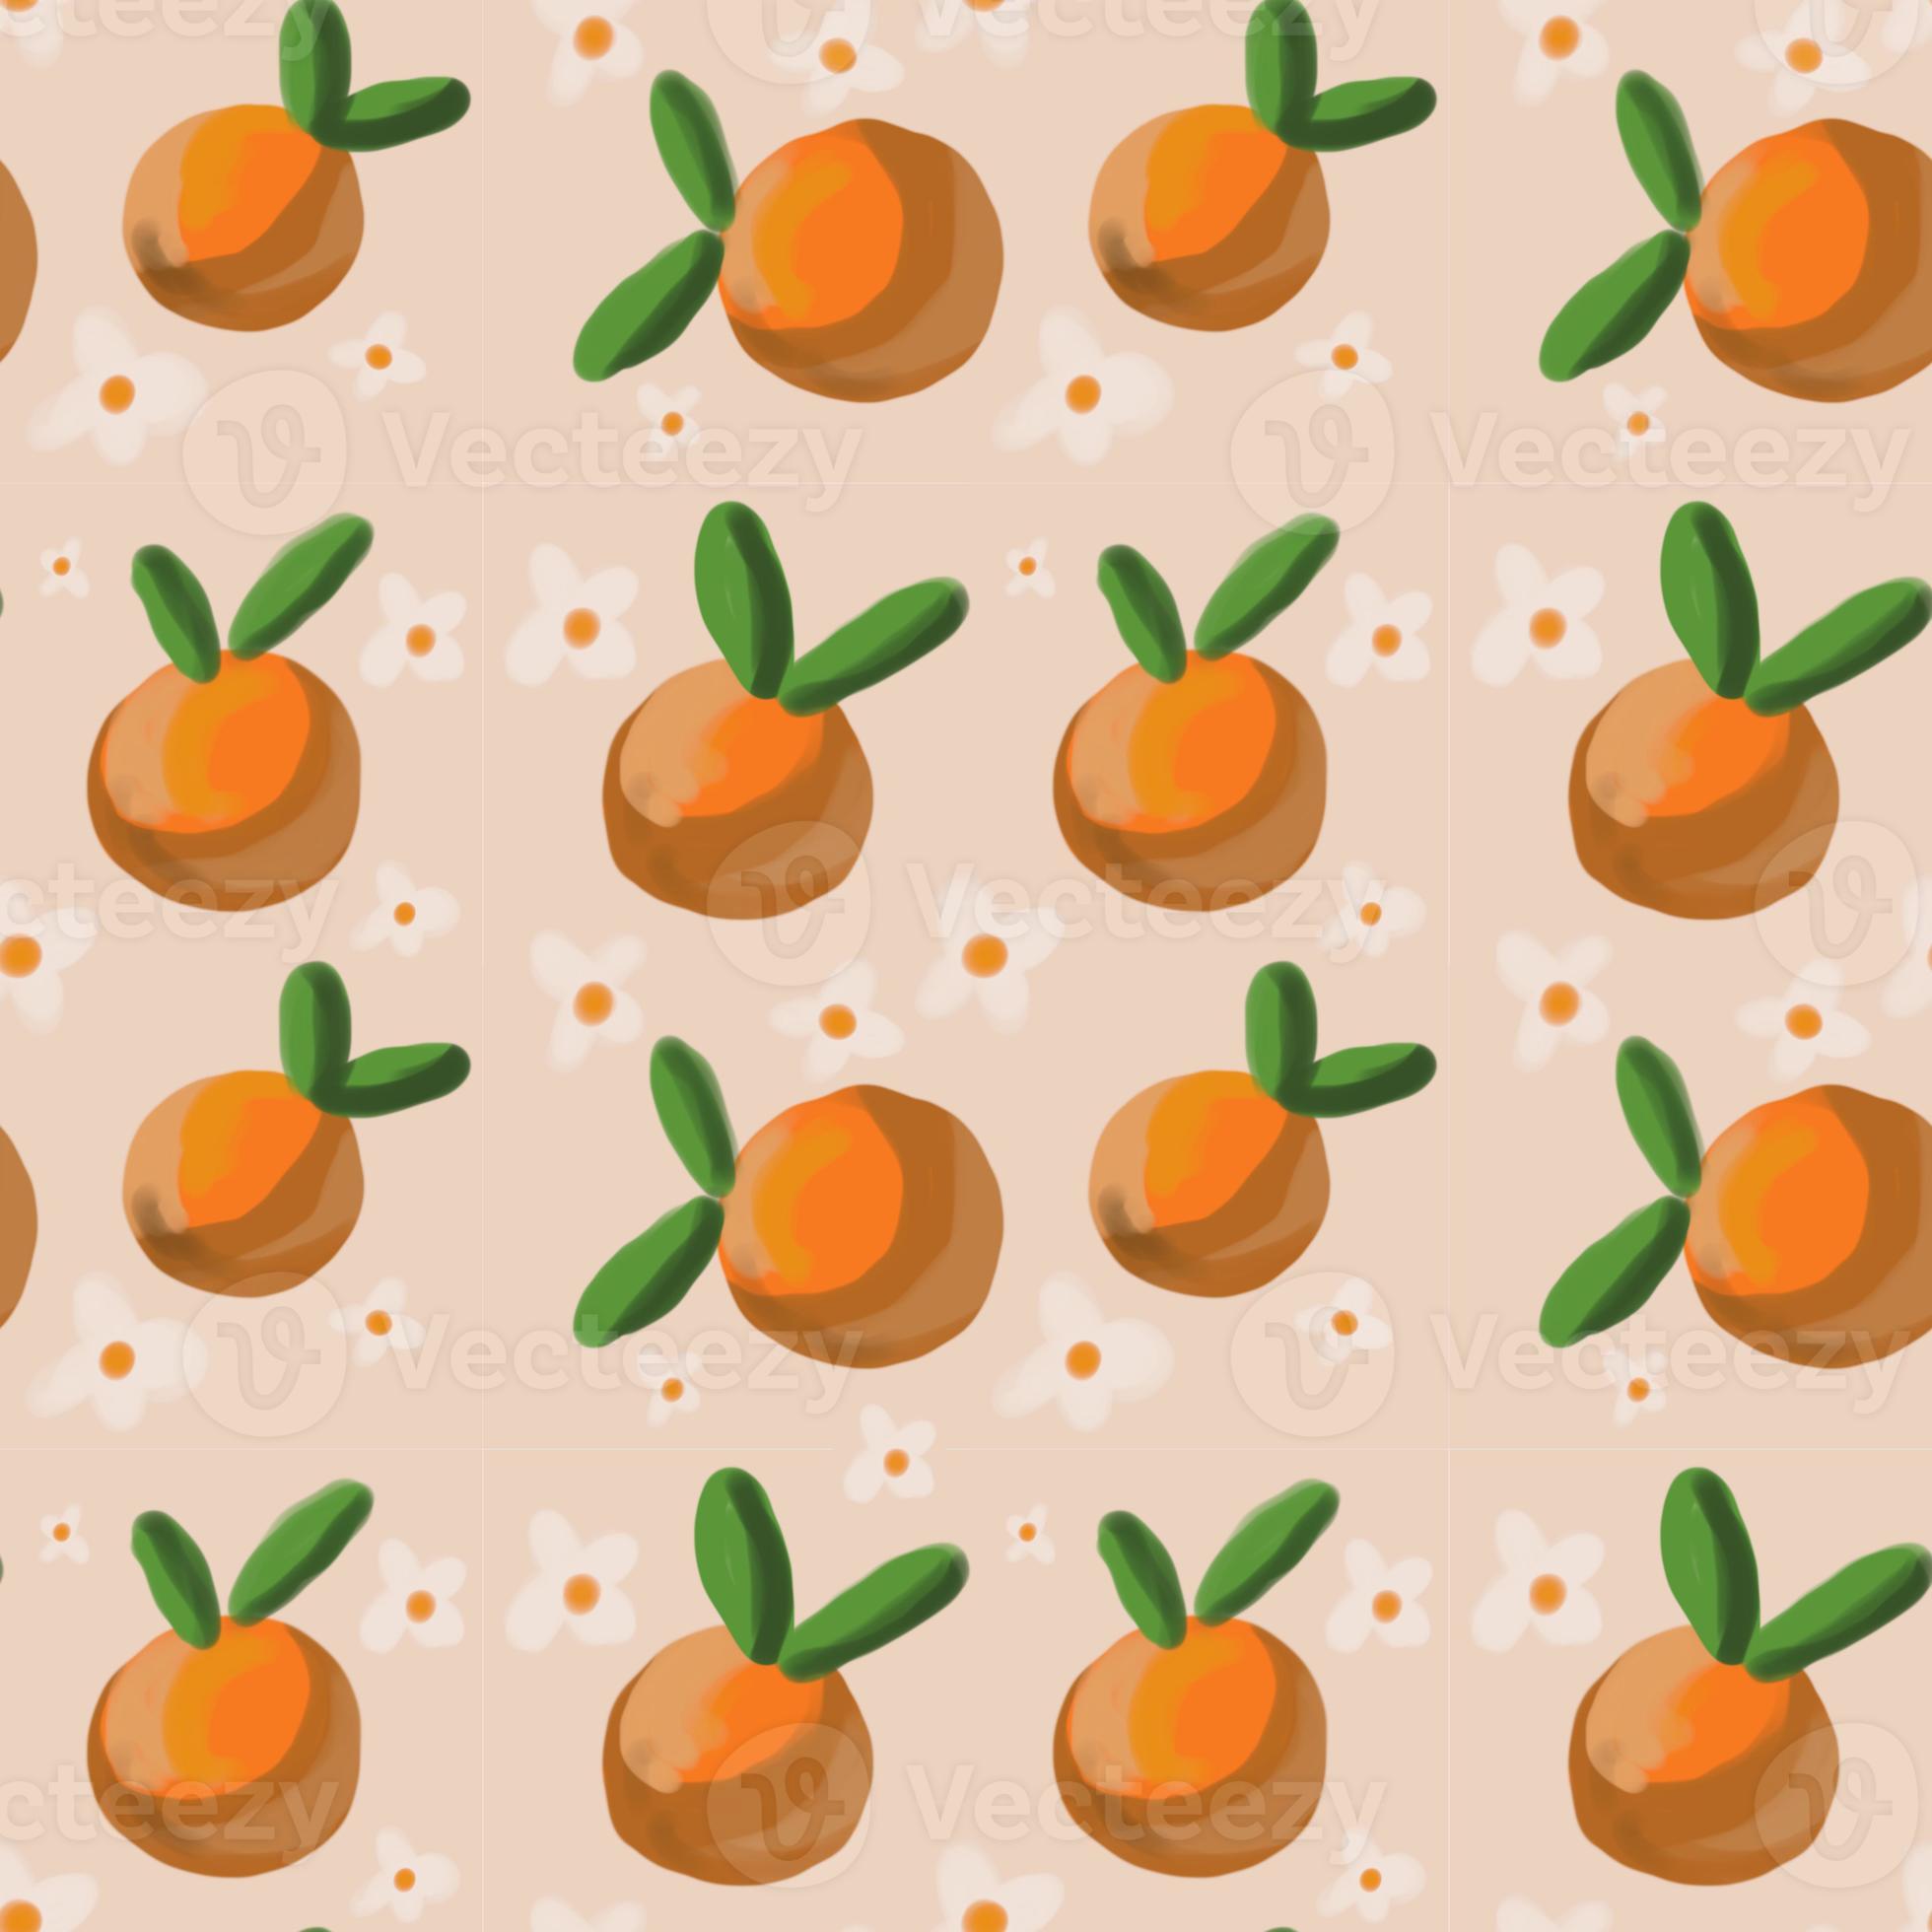 sfondo vettoriale senza soluzione di continuità di frutta arancione foto